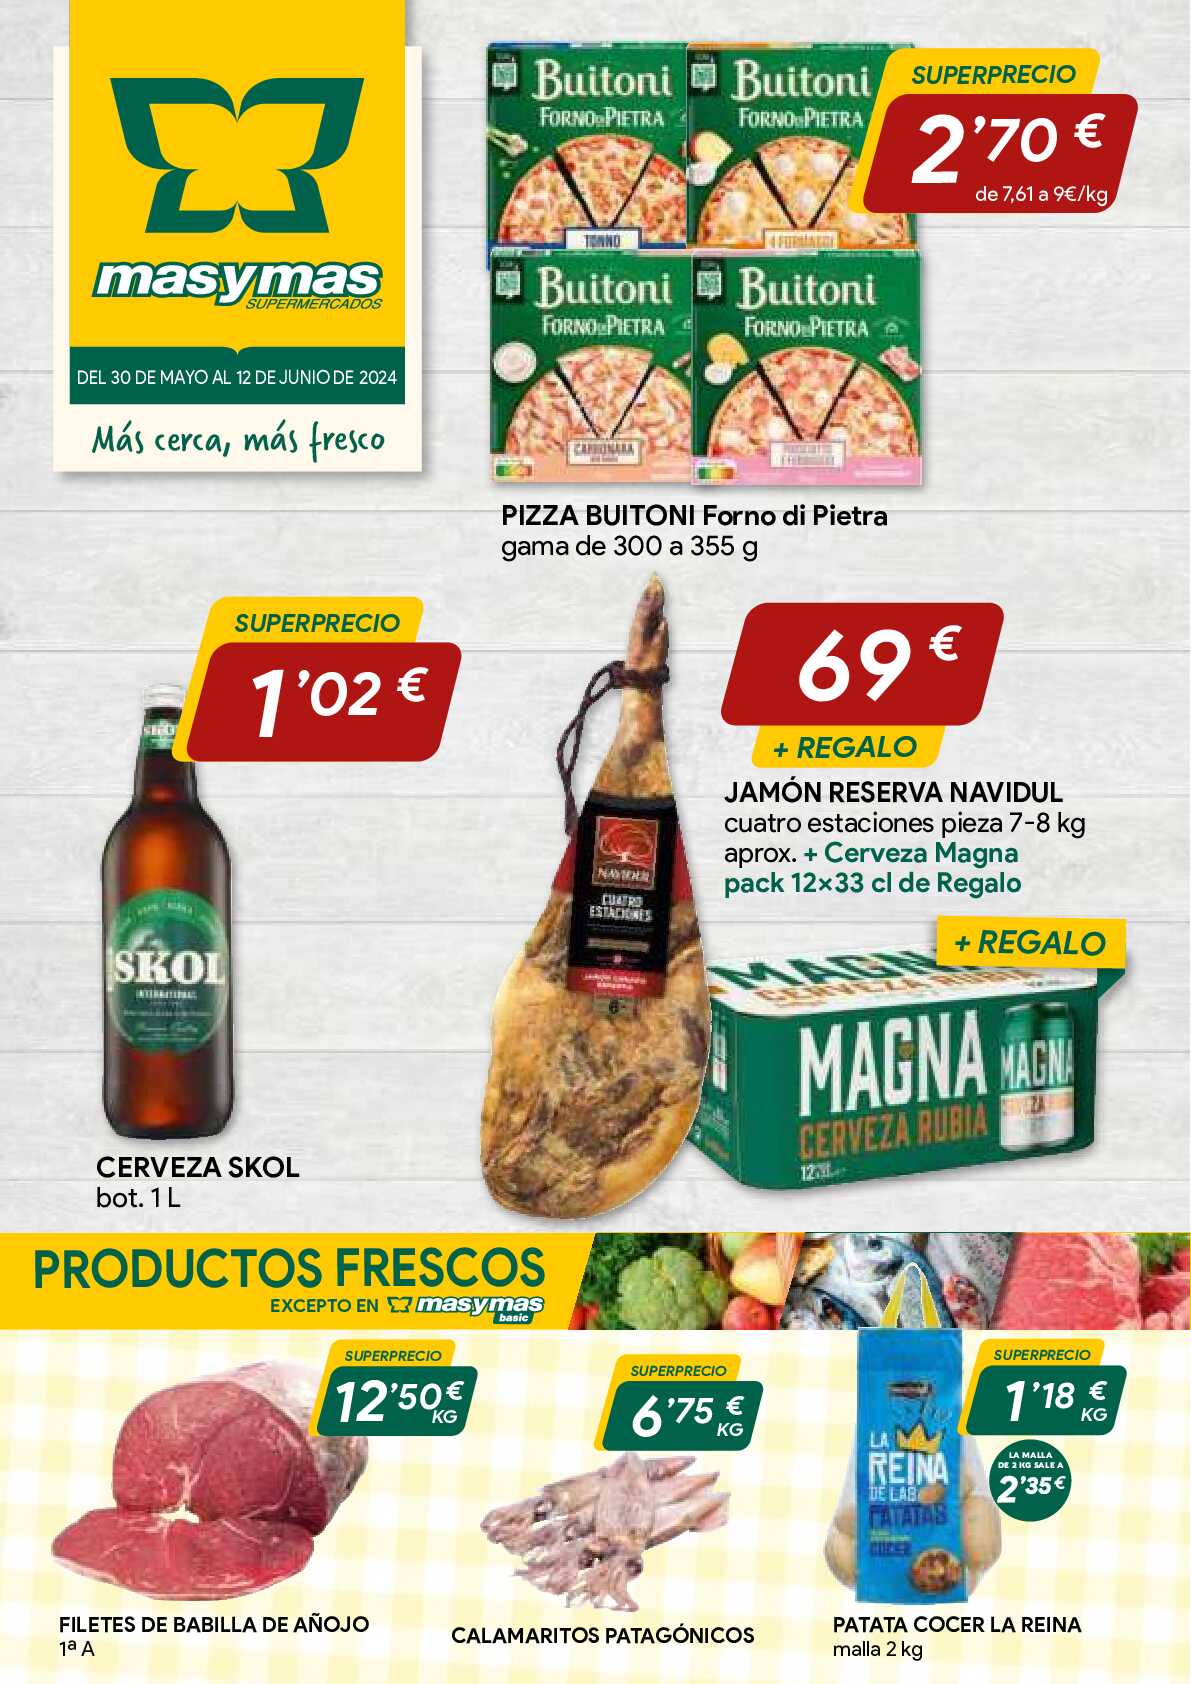 Catálogo de ofertas Masymas. Página 01